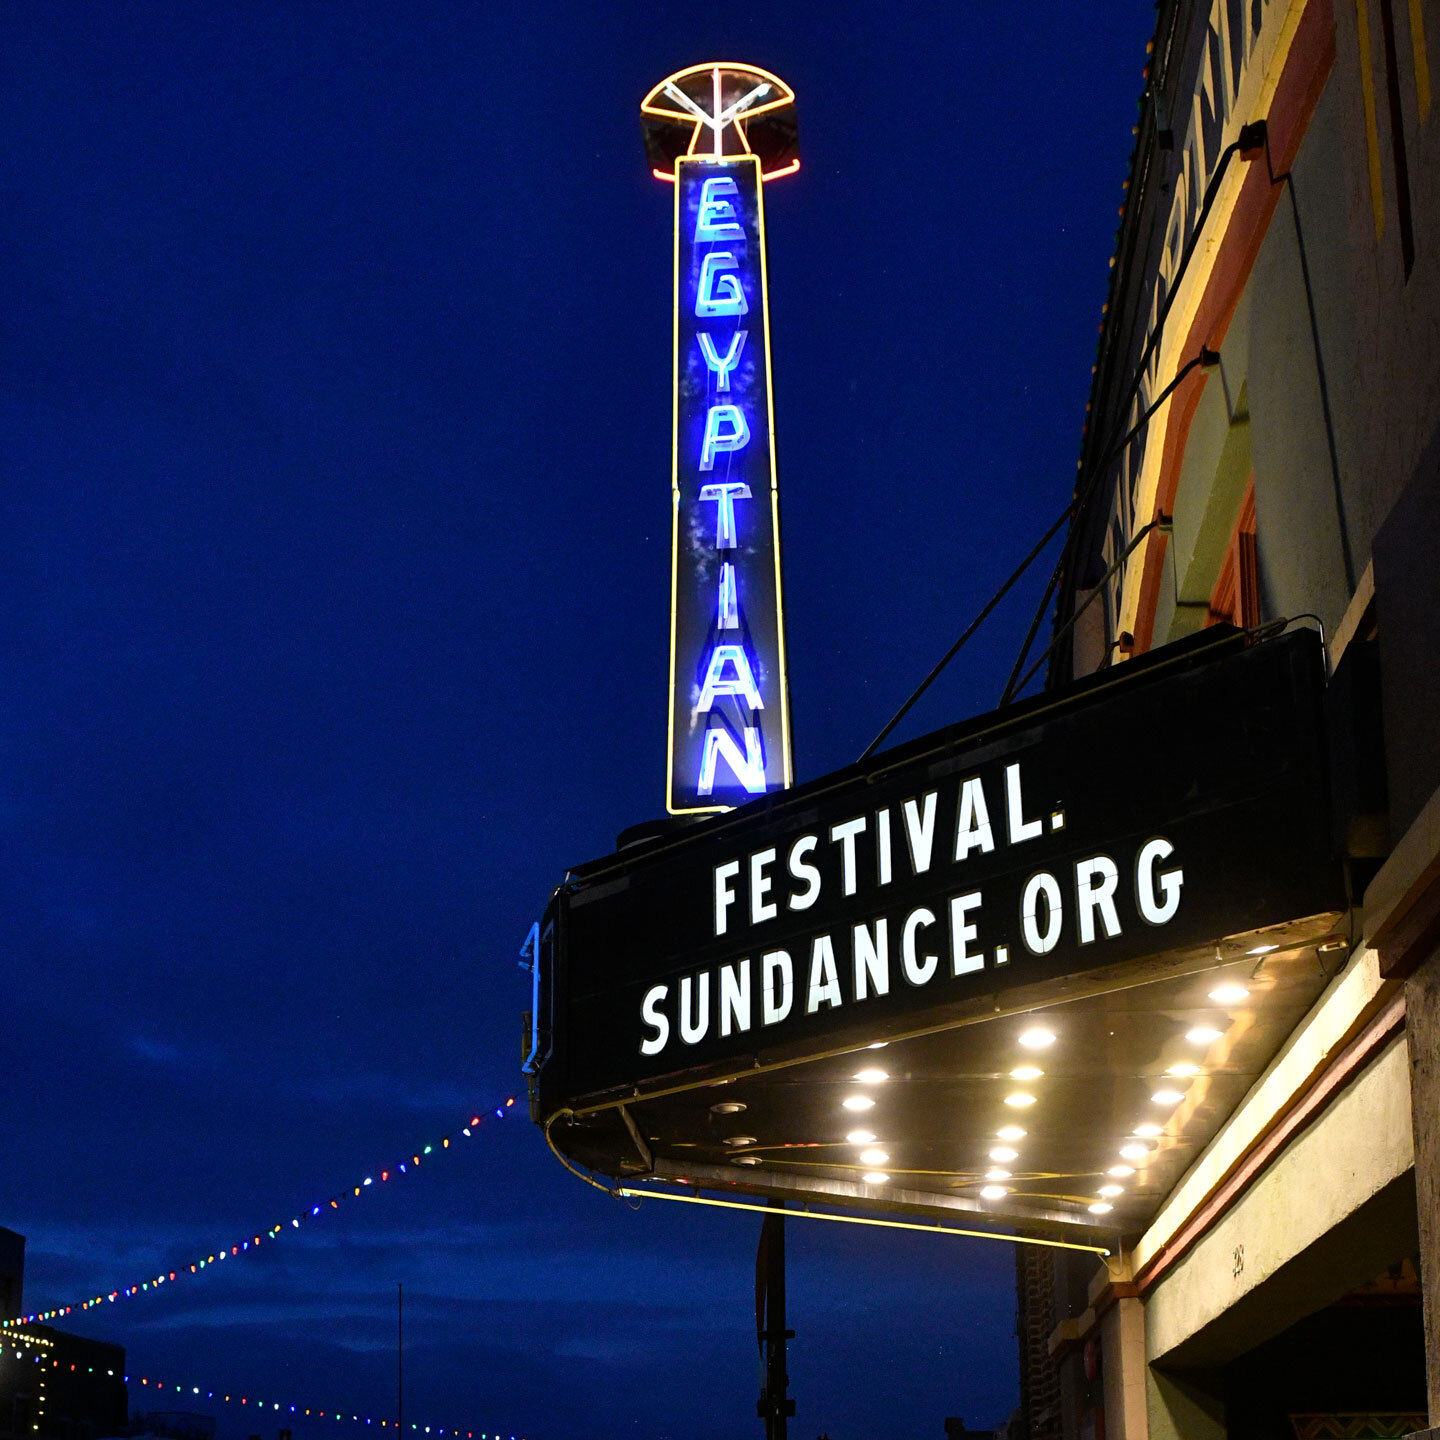 Egyptian Theatre på Sundance-filmfestival med Festival.Sundance.Org på Marquee